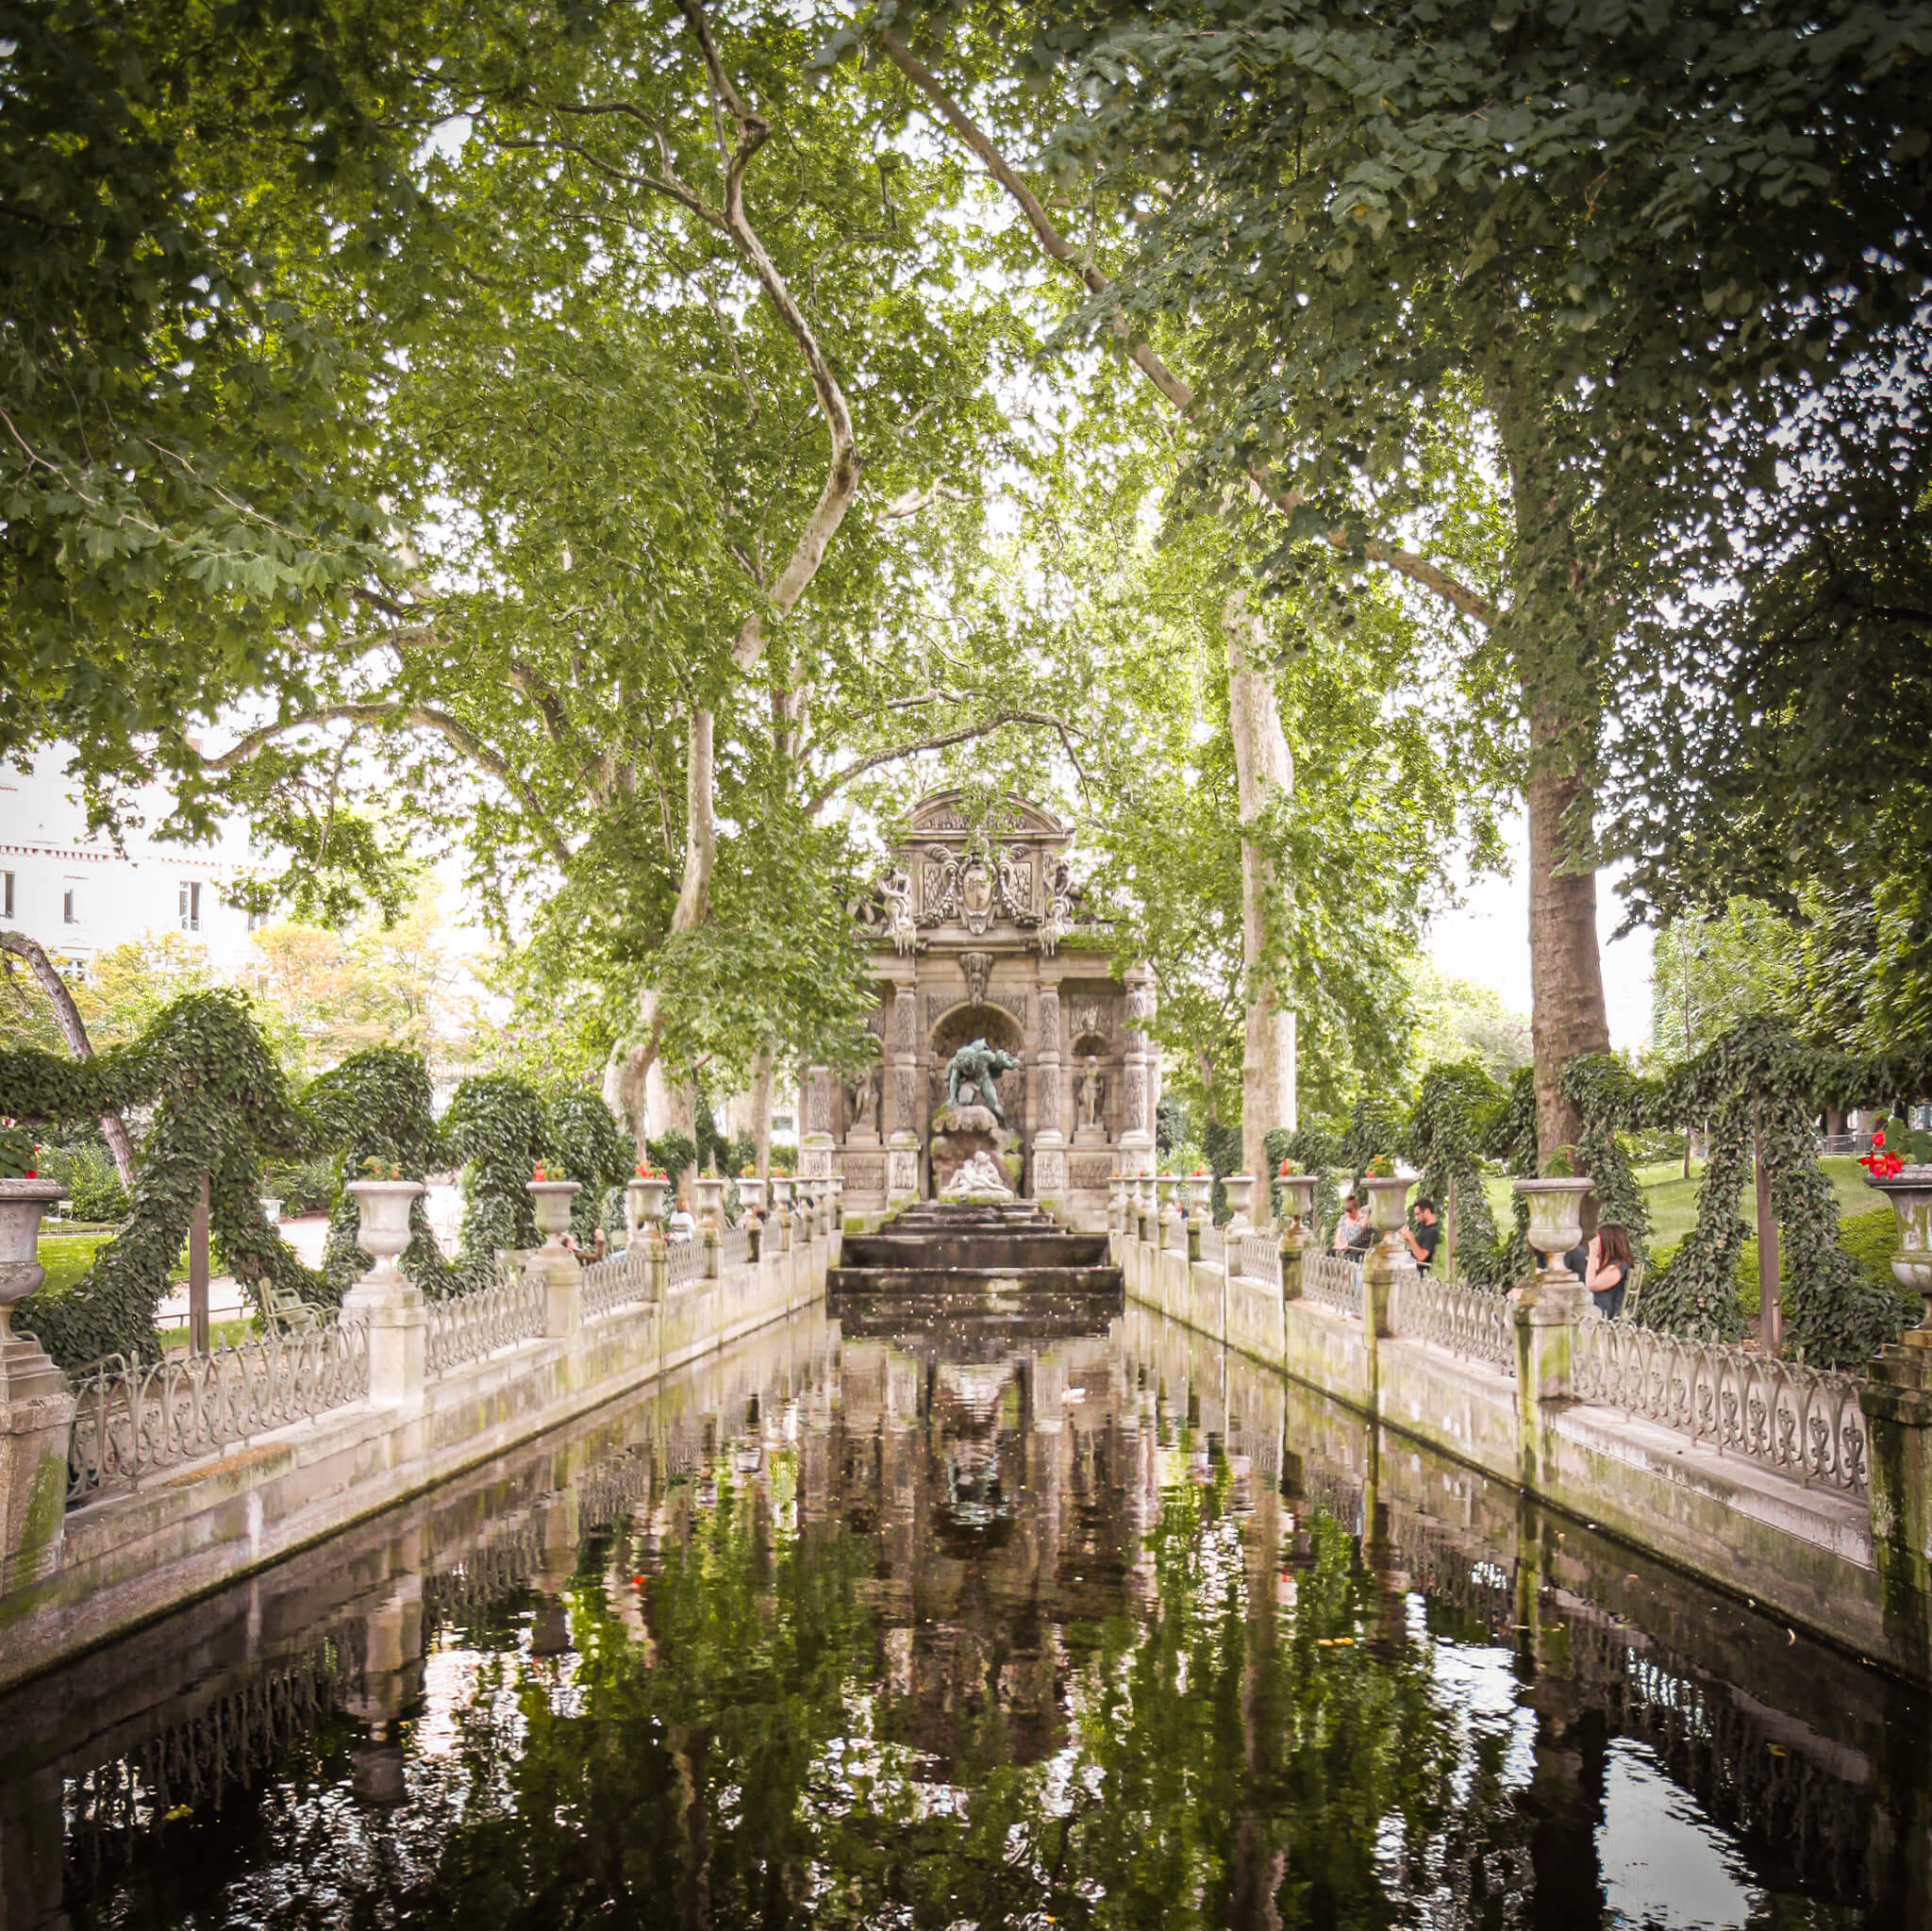 The Fontaine de Médicis at the Jardin du Luxembourg